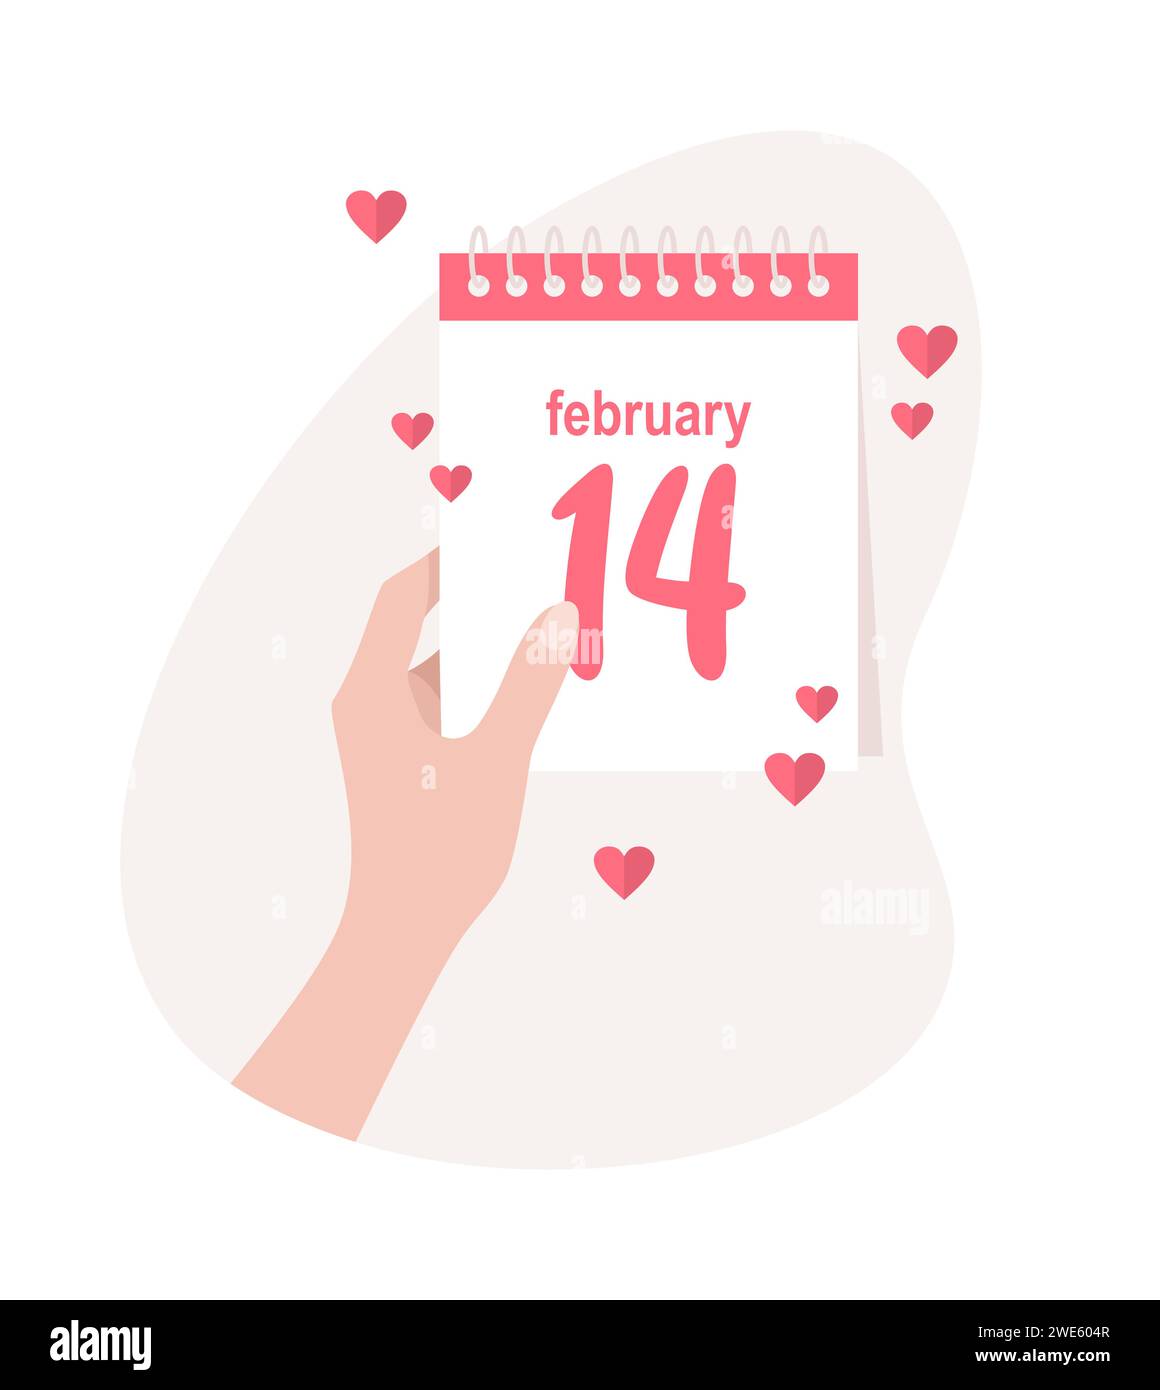 Calendario giornaliero con data 14 febbraio. Illustrazione vettoriale di San Valentino in stile piatto Illustrazione Vettoriale